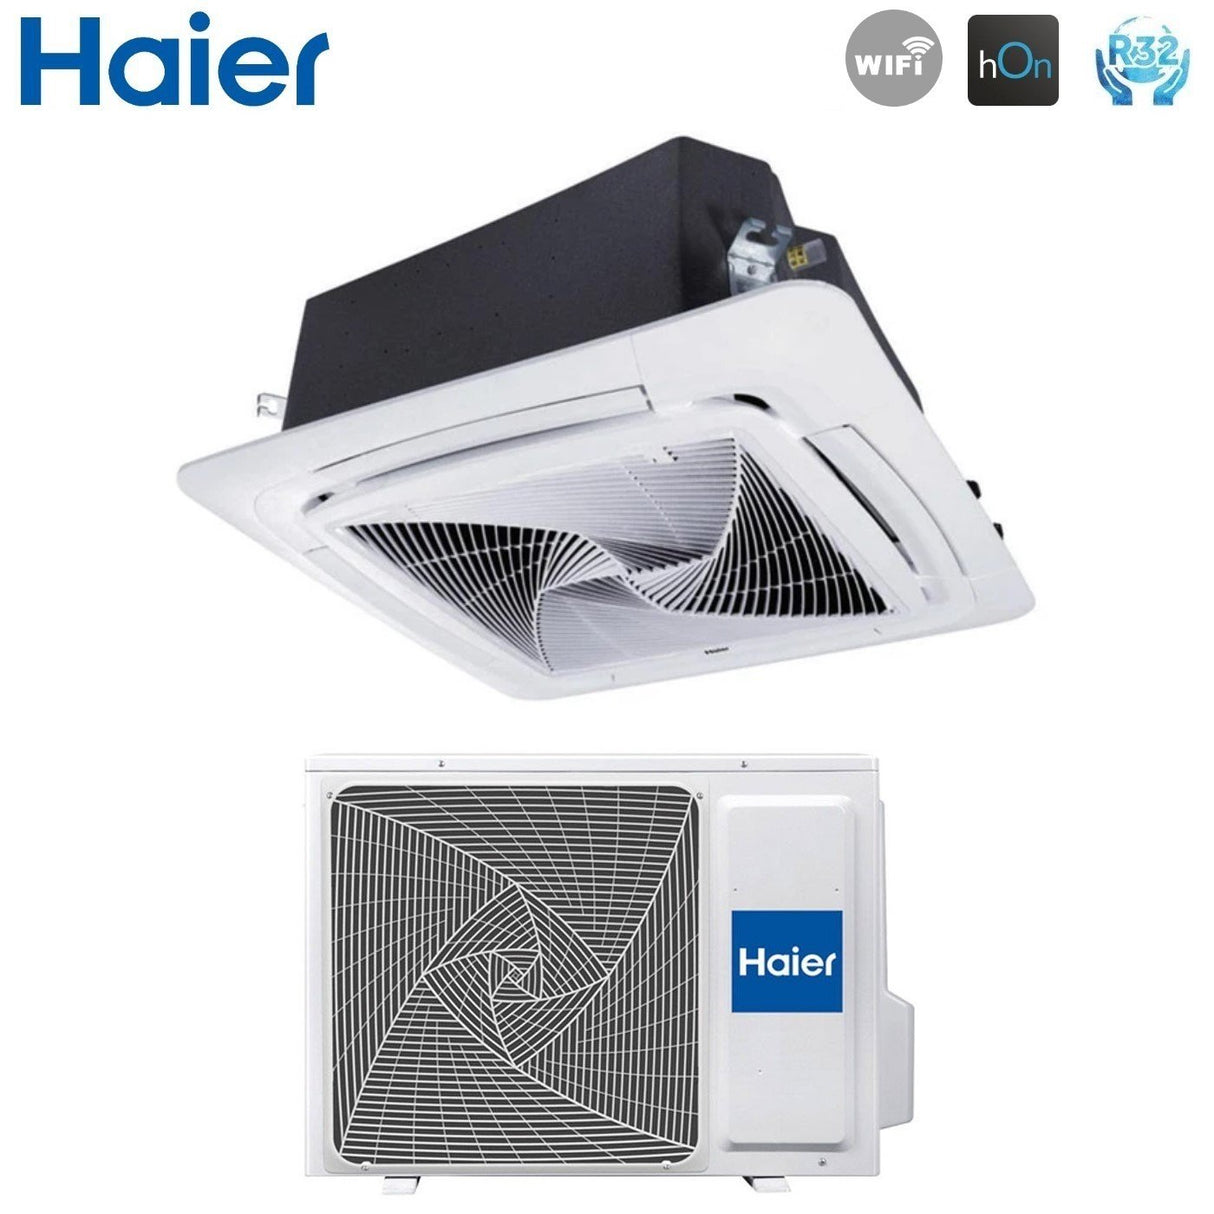 immagine-4-haier-climatizzatore-condizionatore-haier-cassetta-90x90-round-flow-24000-btu-ab71s2sg1fa-r-32-wi-fi-optional-con-pannello-no-sensor-incluso